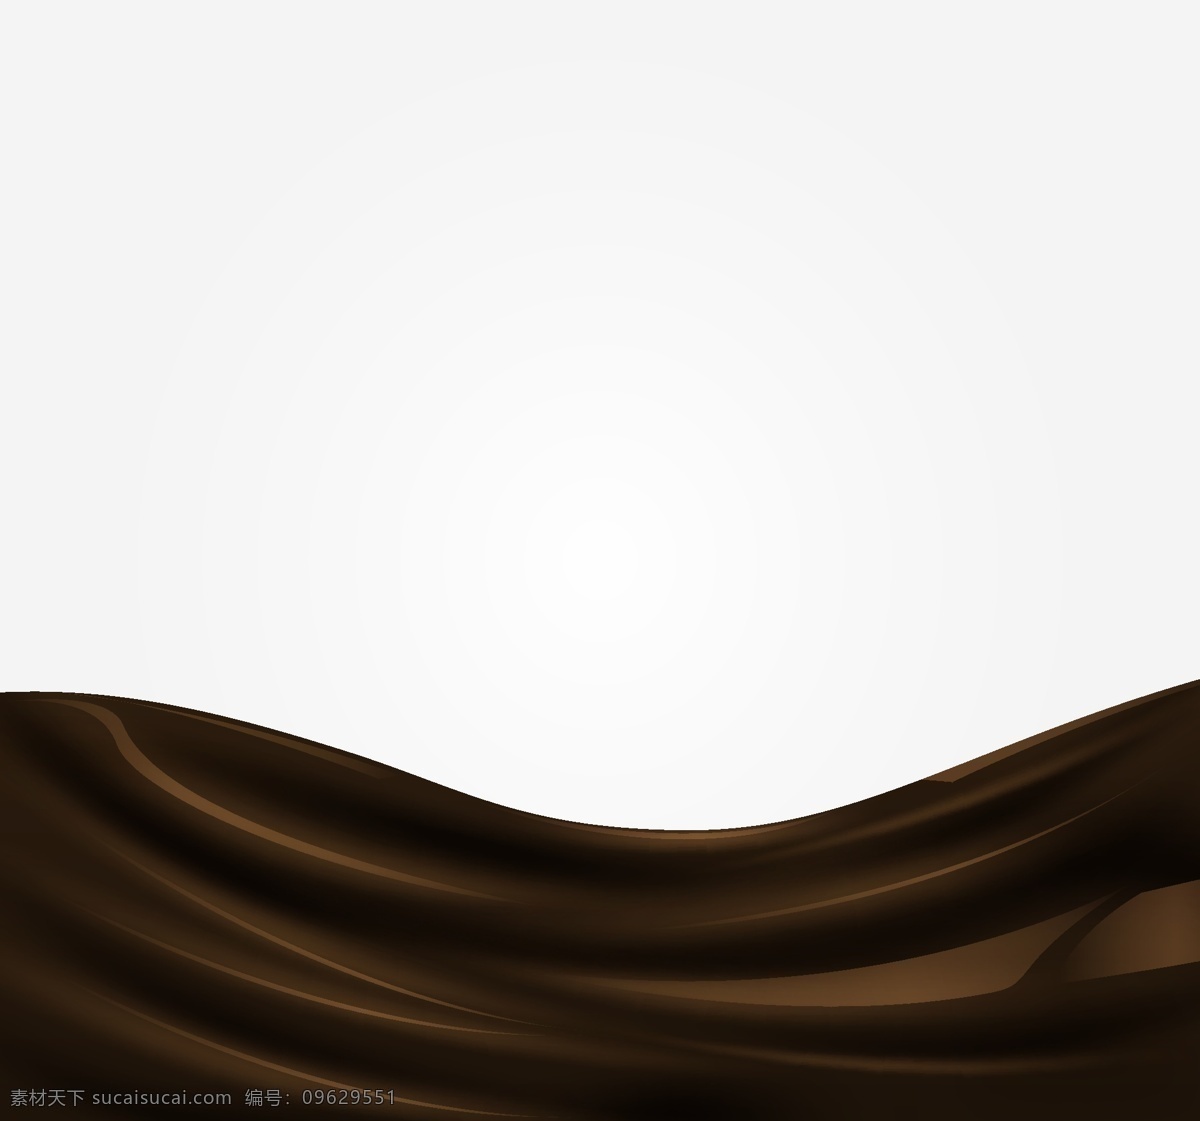 巧克力 背景图片 丝滑质感 巧克力背景 丝滑背景 顺滑巧克力 咖啡